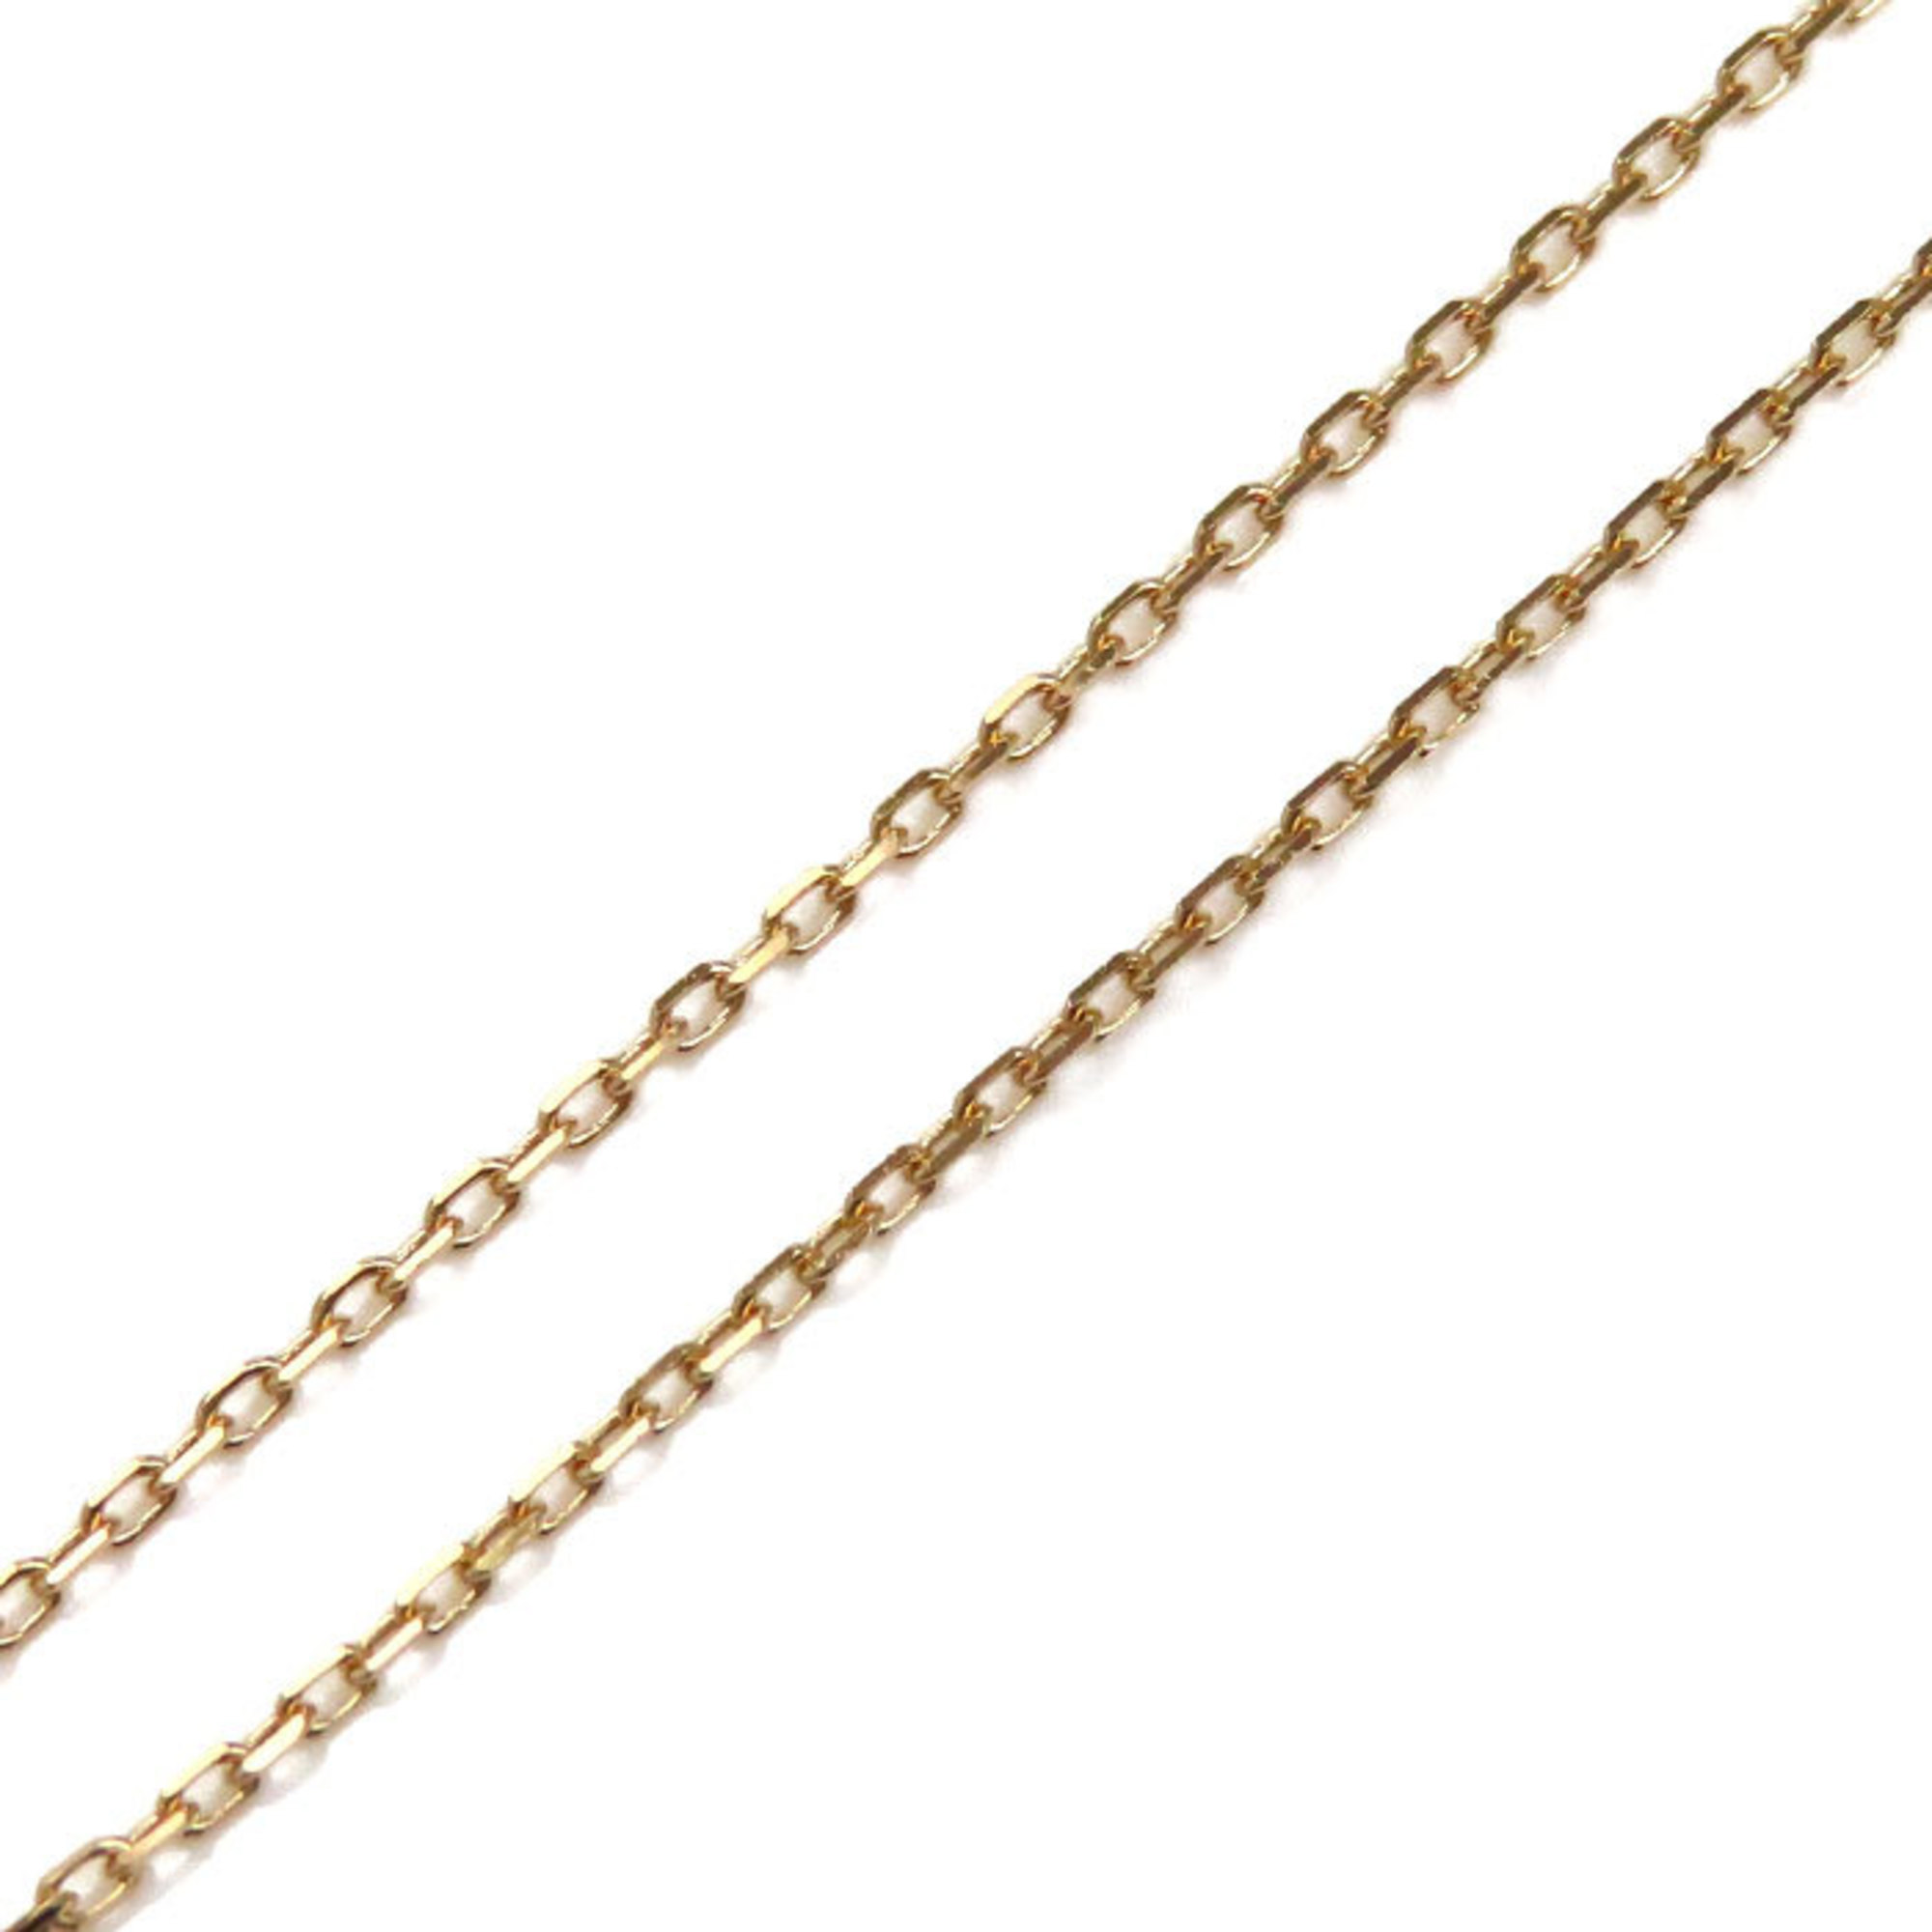 Chaumet K18PG Pink Gold Jeux de Liens Lapis Lazuli Necklace Diamond 3.0g 42-40-38cm Women's